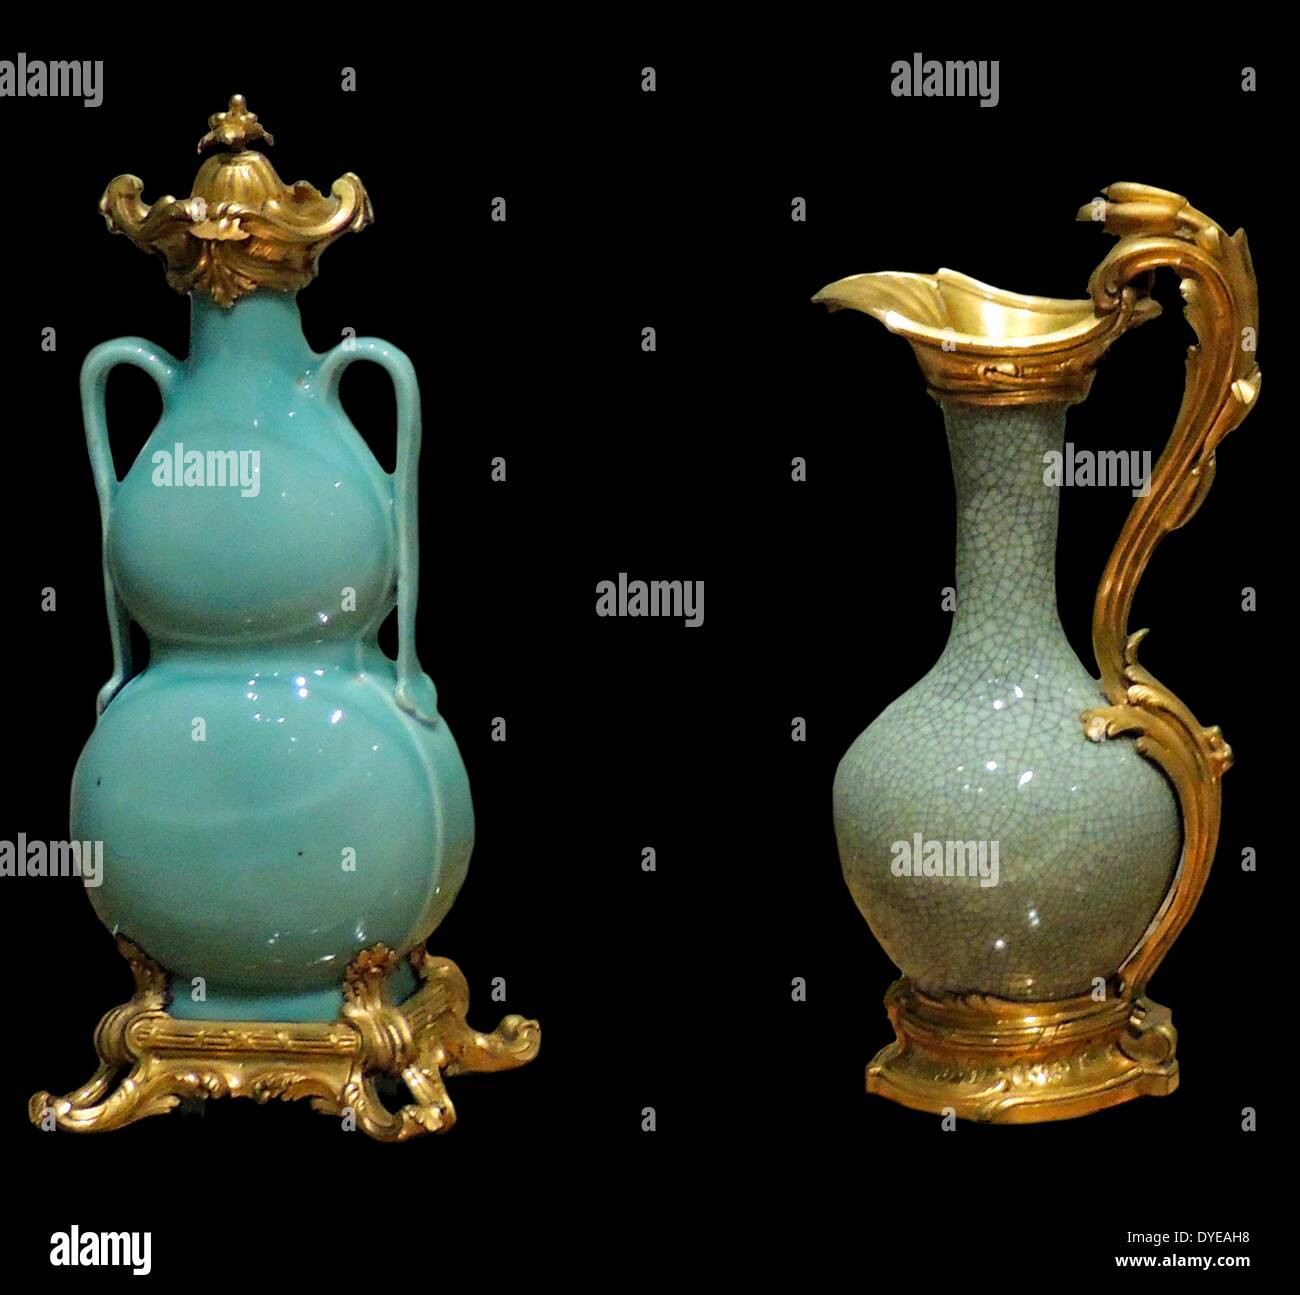 Ewer, Paris, c 1755-1760. Vase, Chine, ch. Pâte dure, 1725-1740 Porcelaine, bronze doré. A Paris artisan transformé ce vase chinois dans un broc. C'est un exemple d'chinoiserie, dans lequel un objet oriental acquiert un nouveau personnage par l'ajout d'éléments de l'Ouest. La porcelaine émaillée gris donne l'impression d'avoir toutes les petites fissures sur elle. Ce type de porcelaine - appelé craze ou 'crackle vitrage" - a été très admiré à Paris dans le milieu du 18e siècle. Banque D'Images